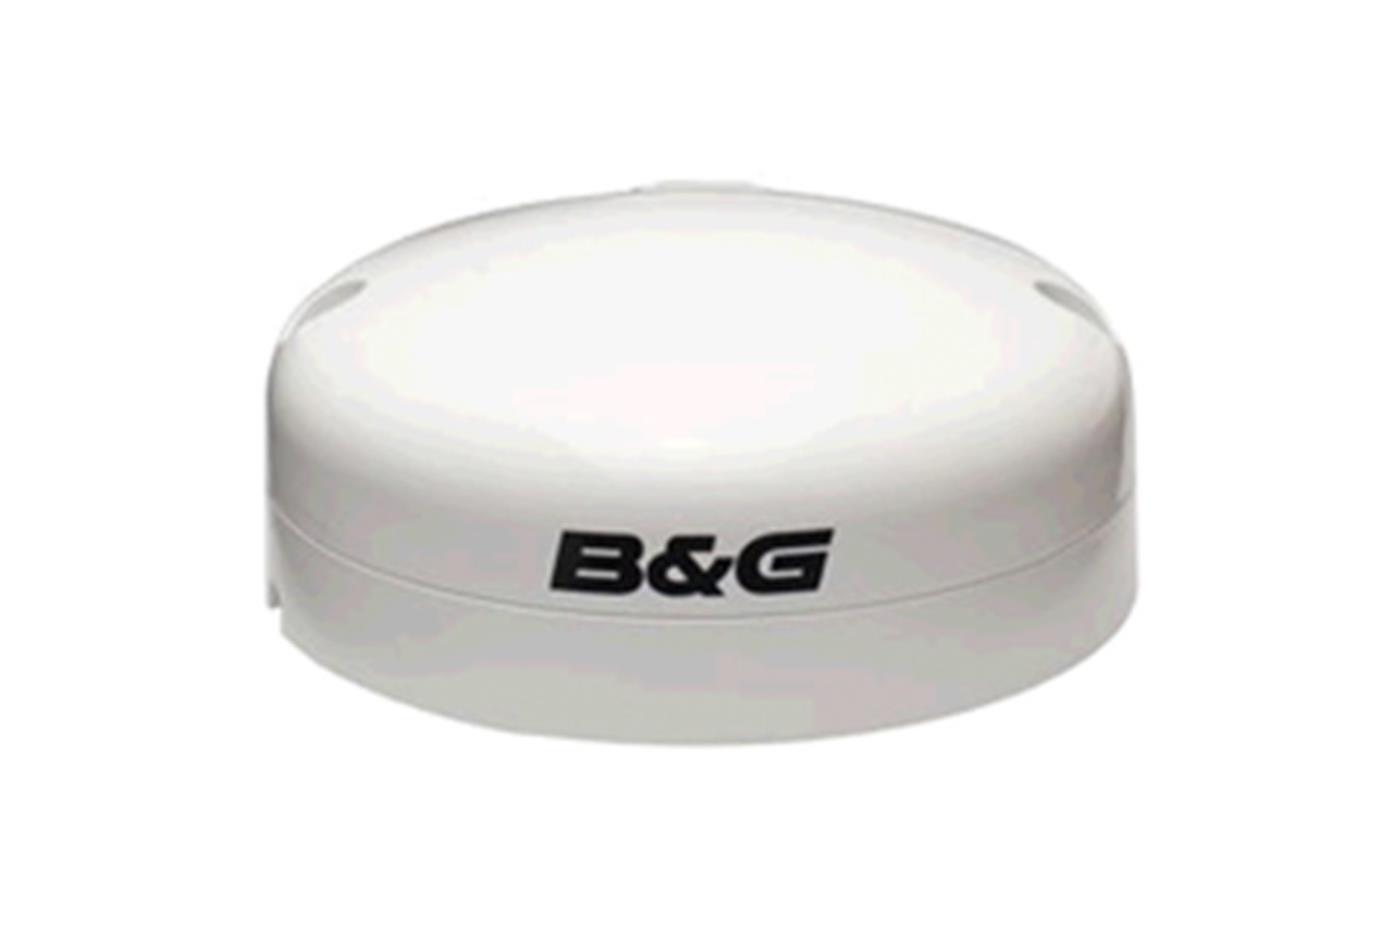 B&G ZG100 GPS Antenna mit integriertem Fluxgate Kompass